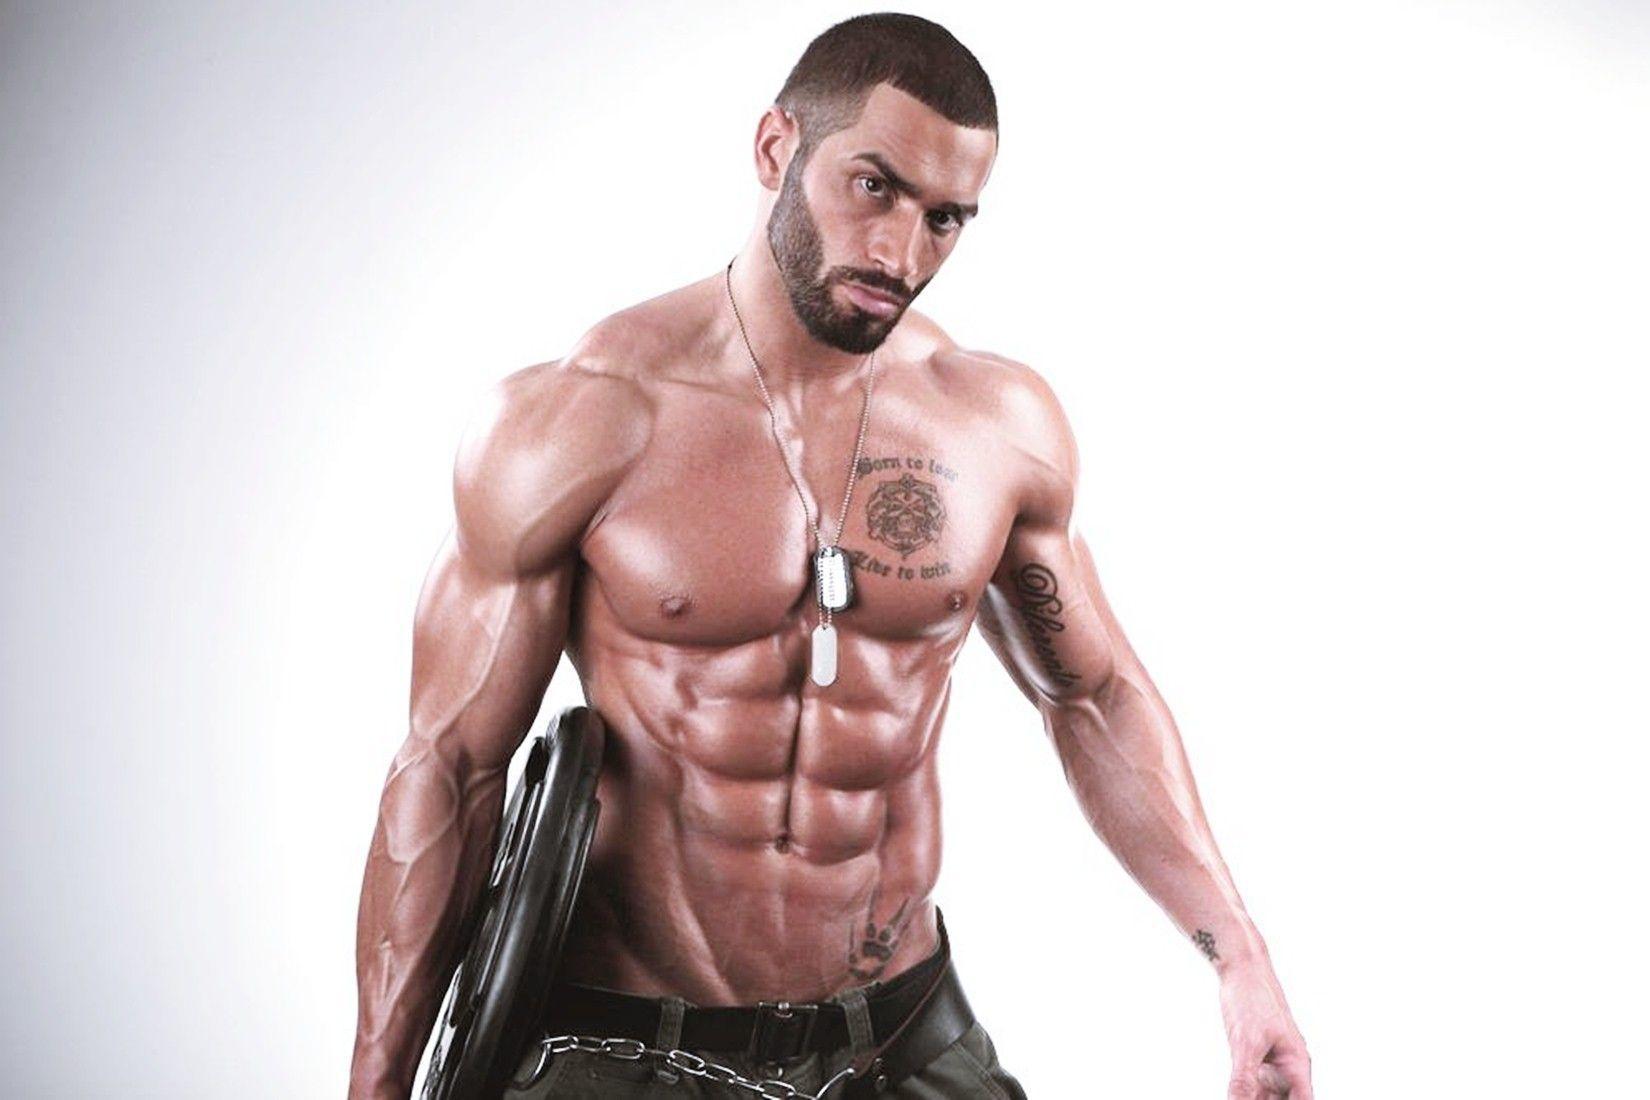 Lazar Angelov Bodybuilder Wiki Biography